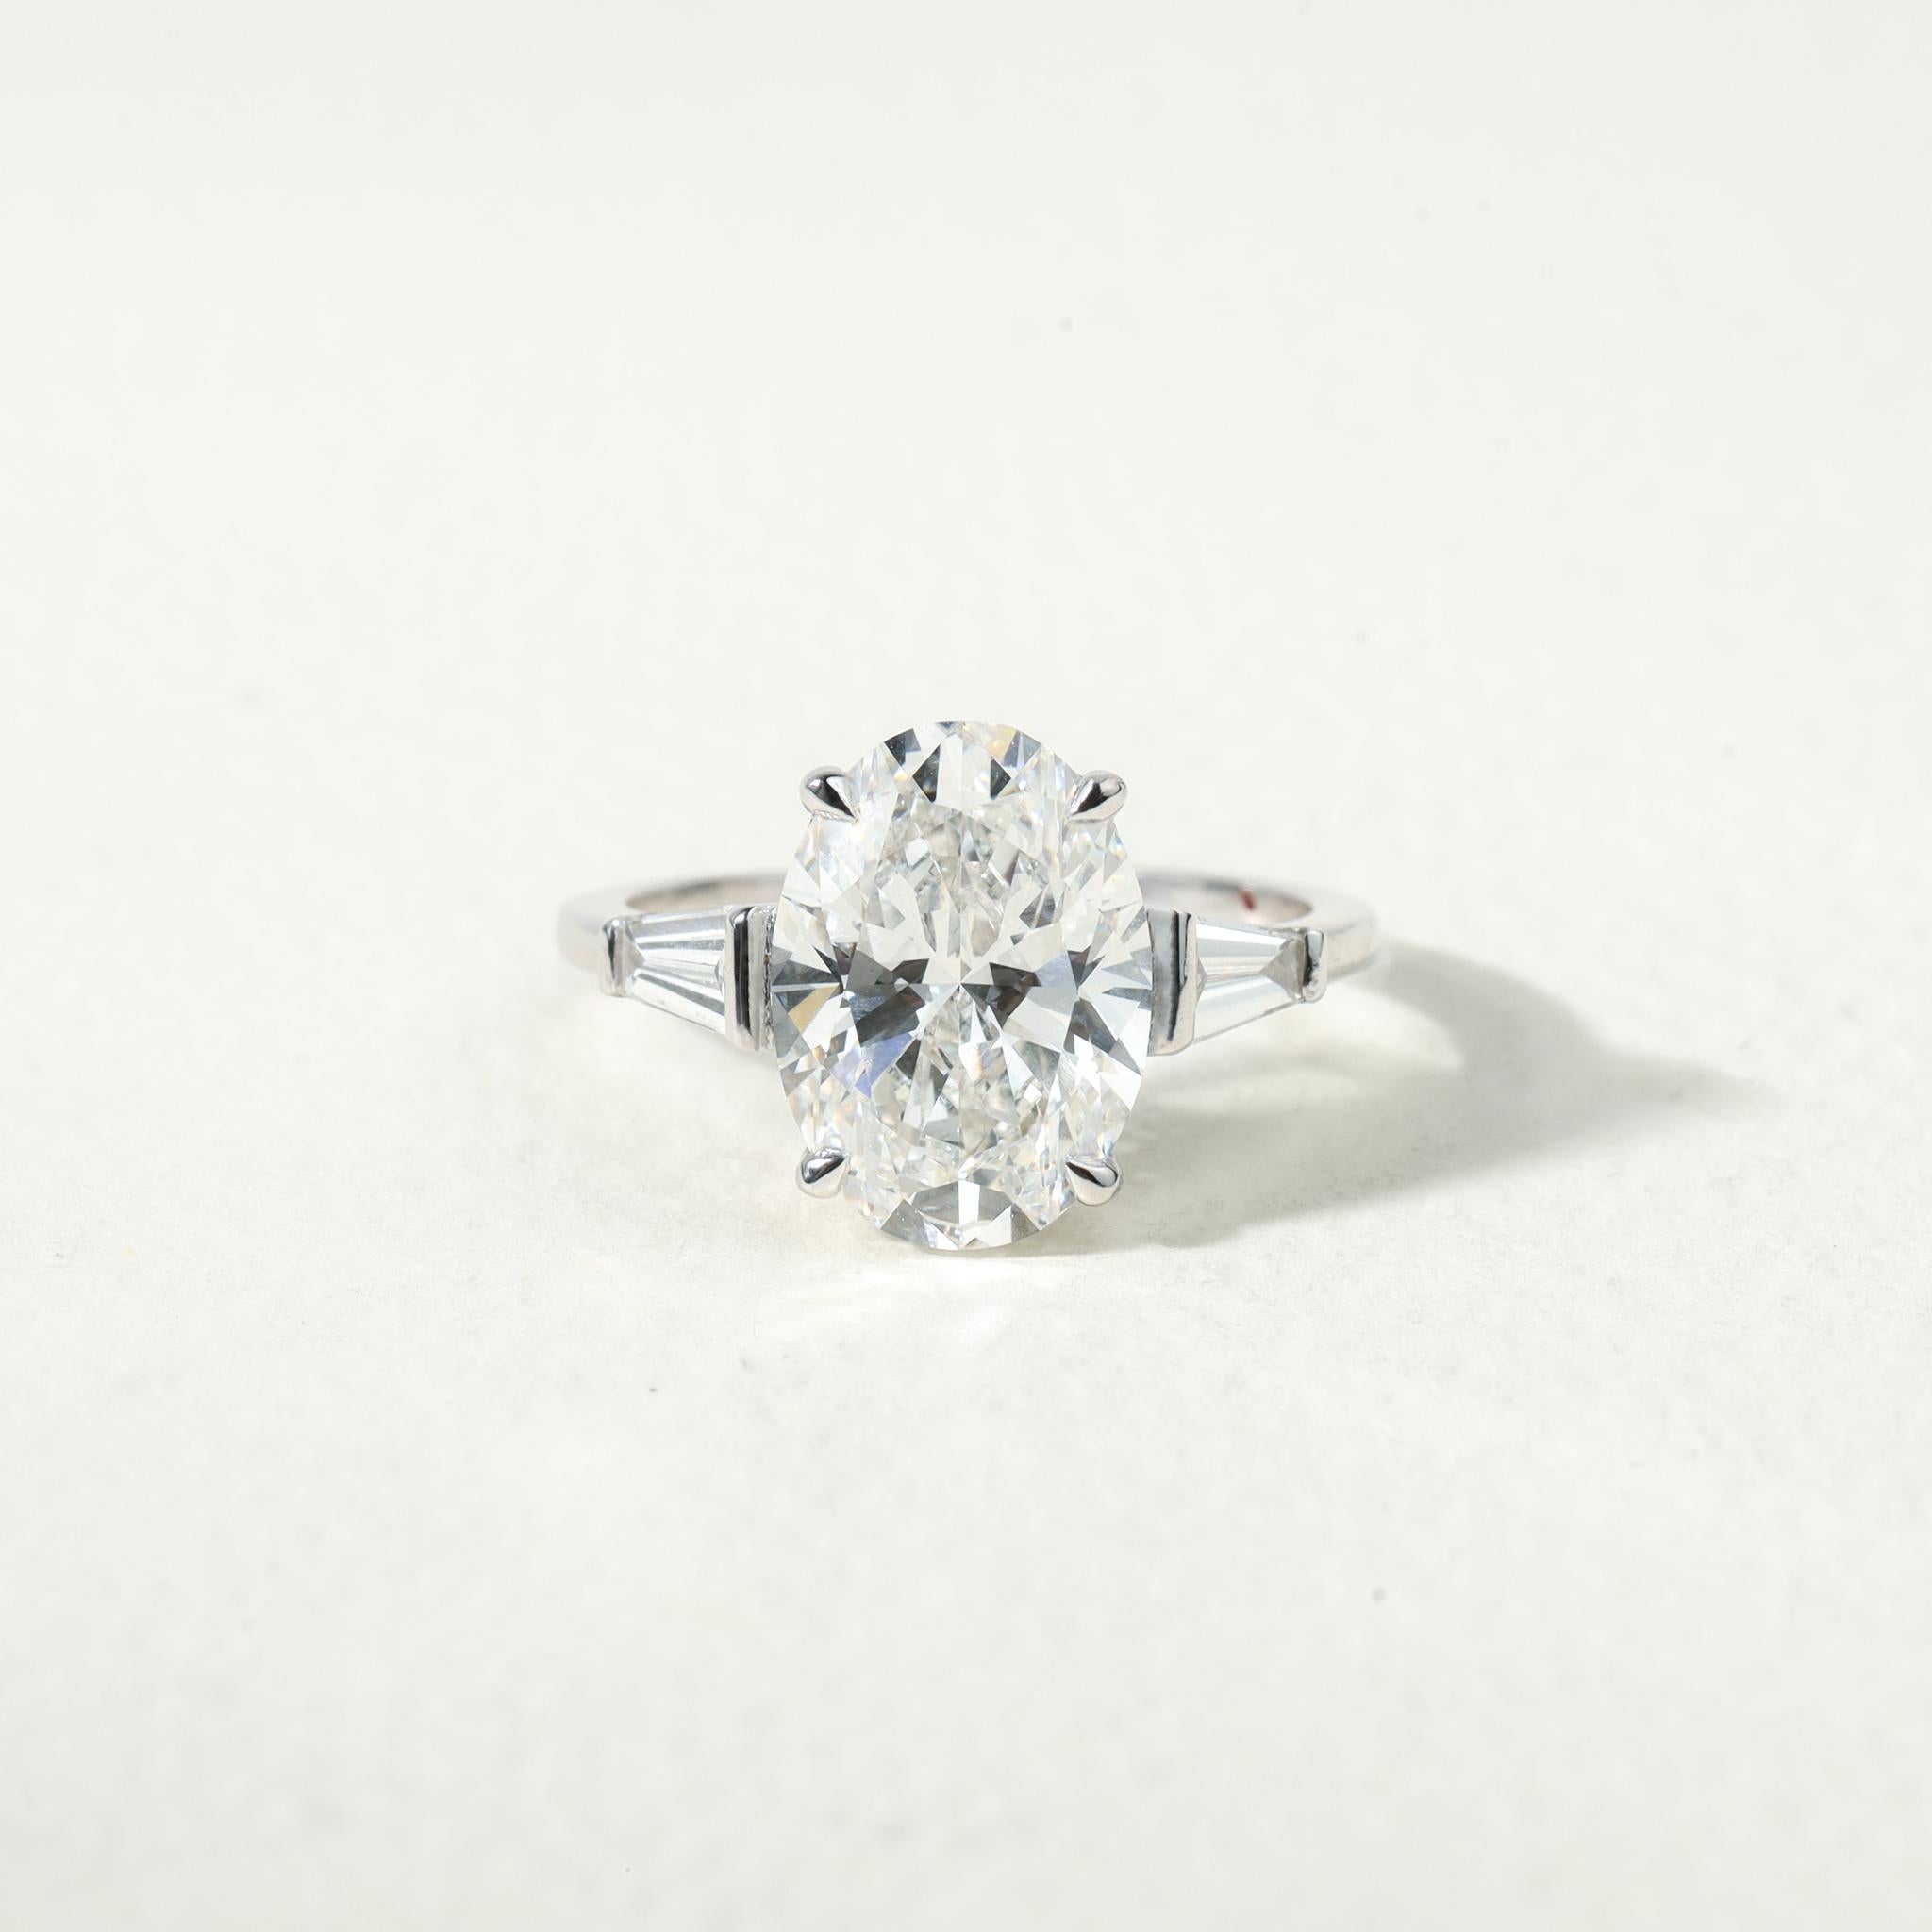 GIA Report Certified G VS2 3 Carat Emerald Cut Diamond Engagement Ring

Disponible en or blanc 18k.

Le même design peut être réalisé avec d'autres pierres précieuses sur demande.

Détails du produit :

- Or massif

-  Diamant latéral - environ 0,33